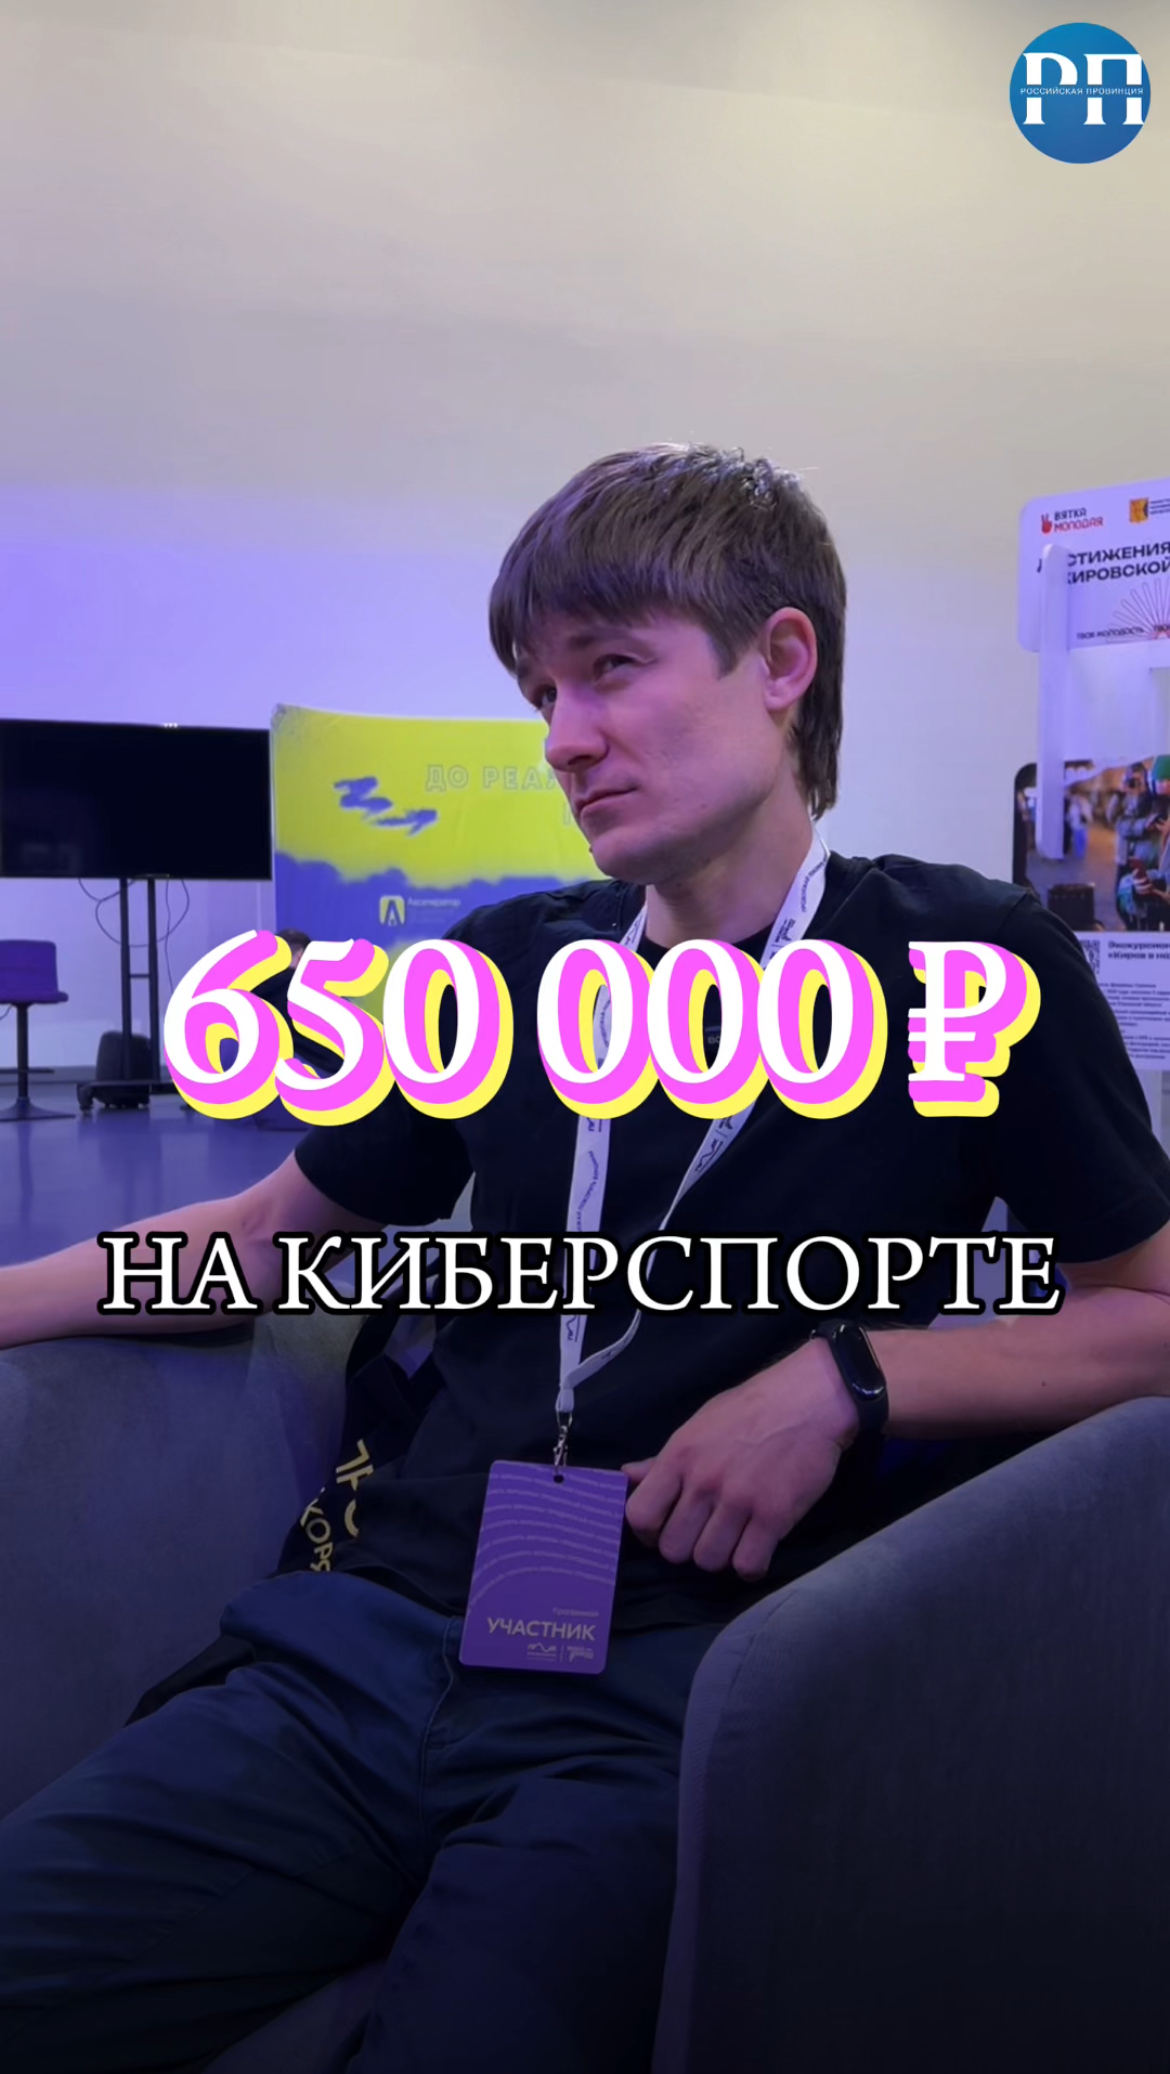 «Как заработать 650 000 рублей на киберспорте?» - Екатерина Трибунских